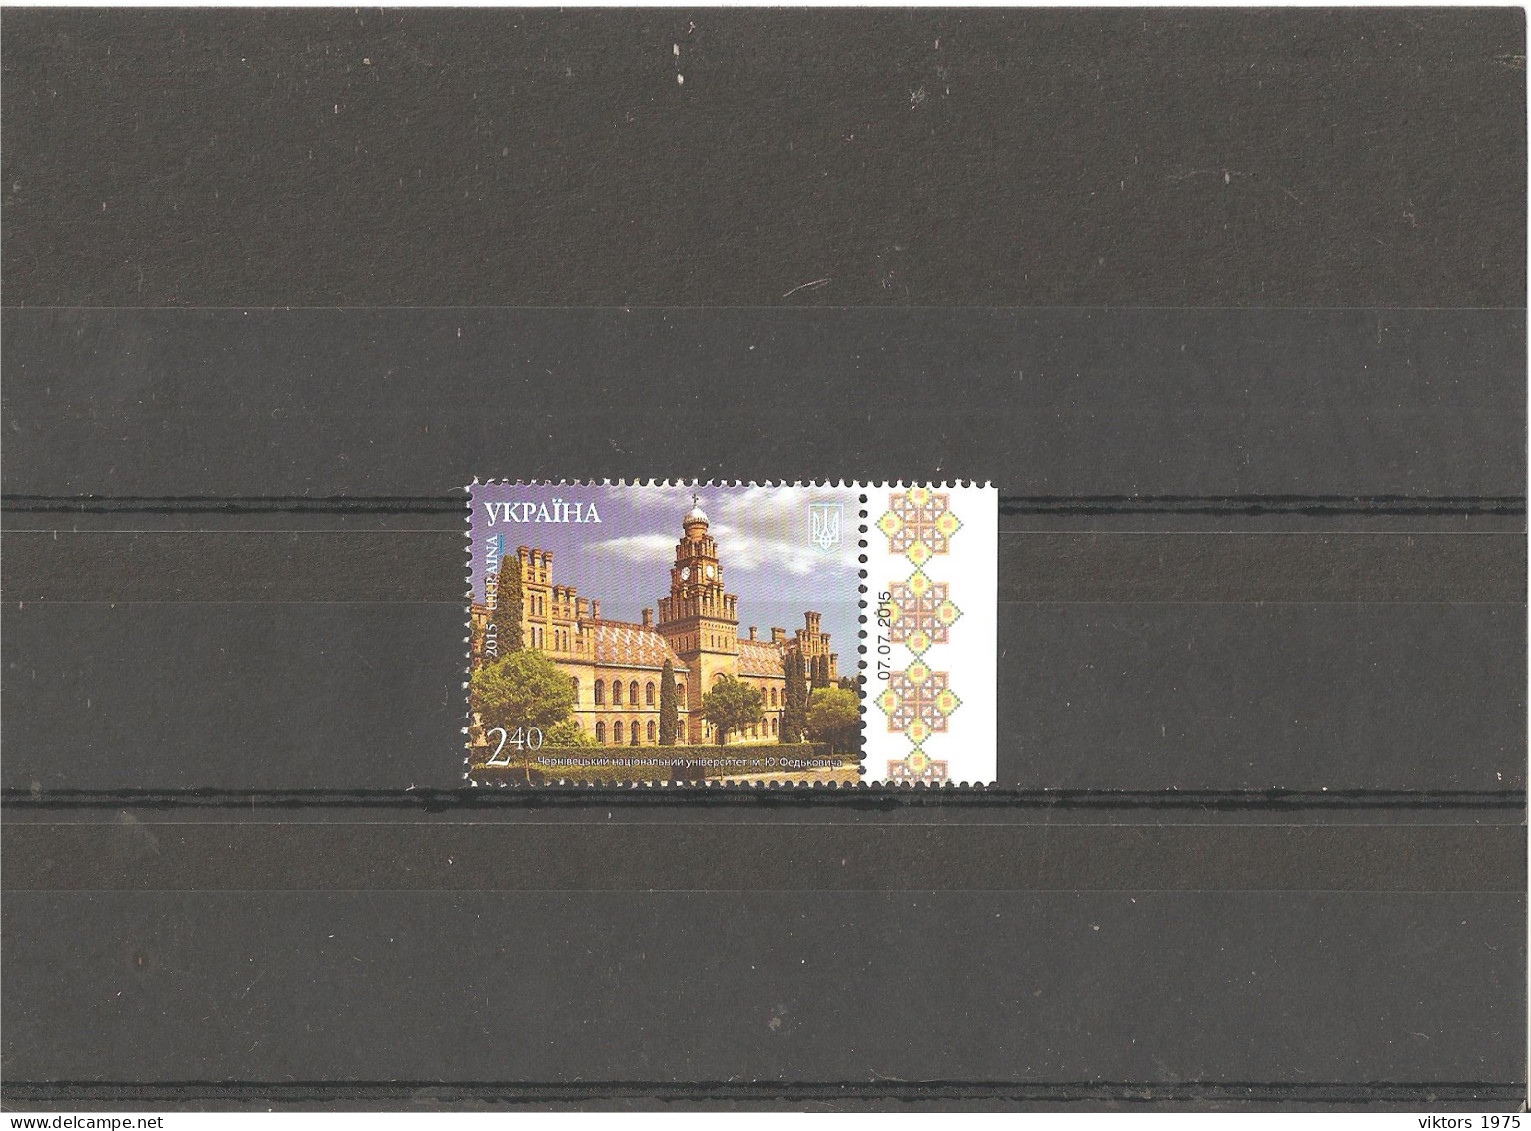 MNH Stamp Nr.1482 In MICHEL Catalog - Ukraine